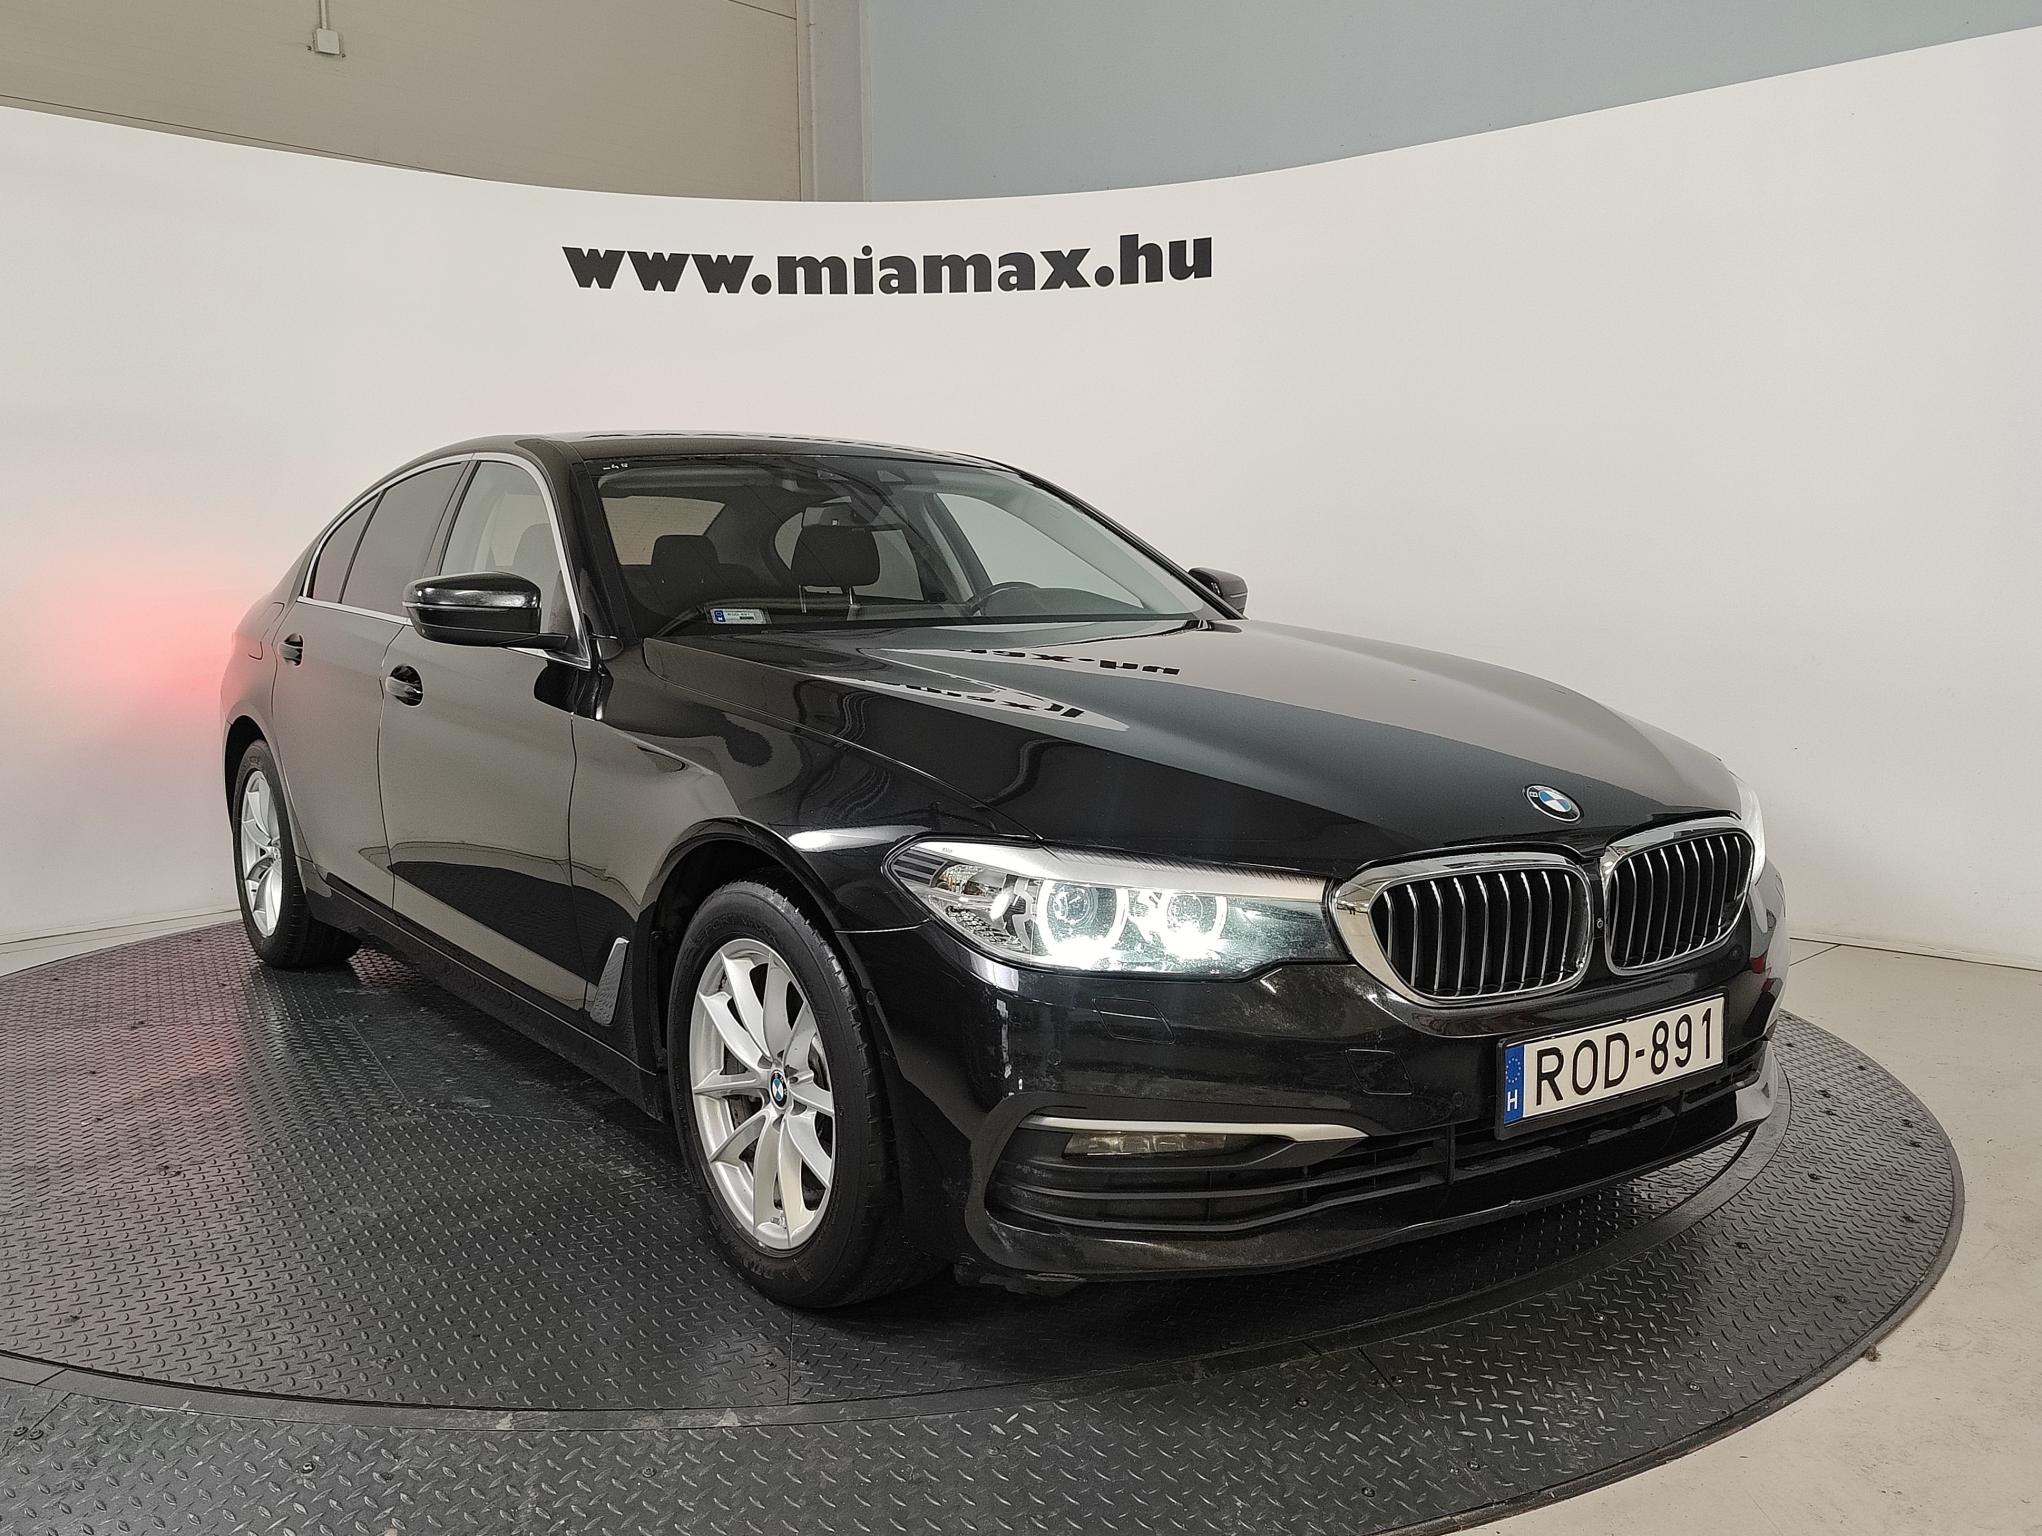 BMW 520d xDrive (Automata) 360 magyarországi. 2 tulajdonos. márkaszervizben szervizelt